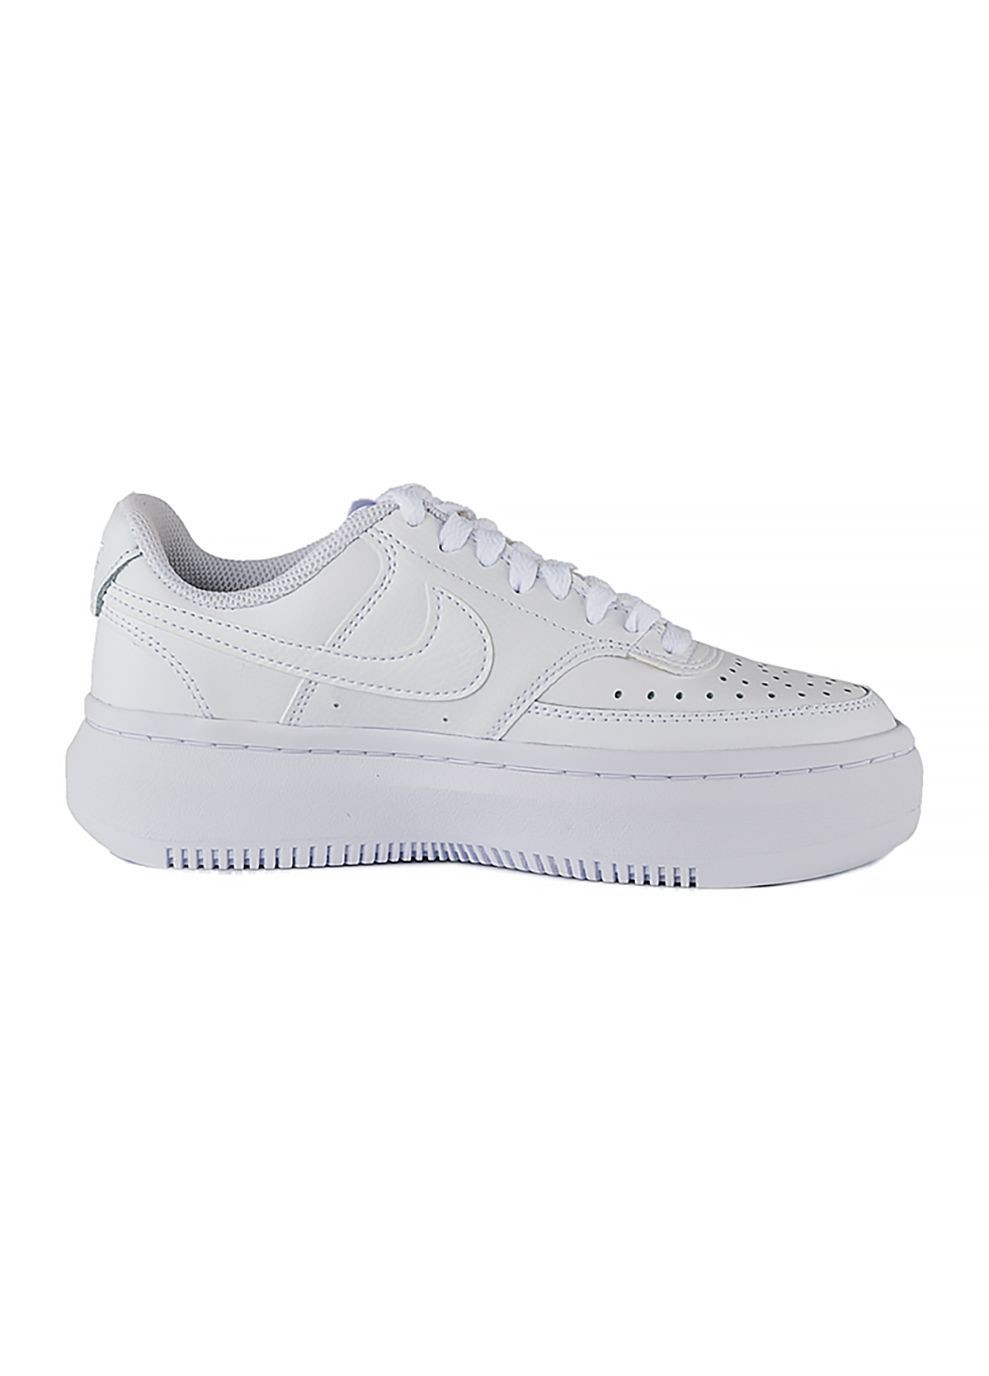 Белые демисезонные женские кроссовки court vision alta ltr белый Nike